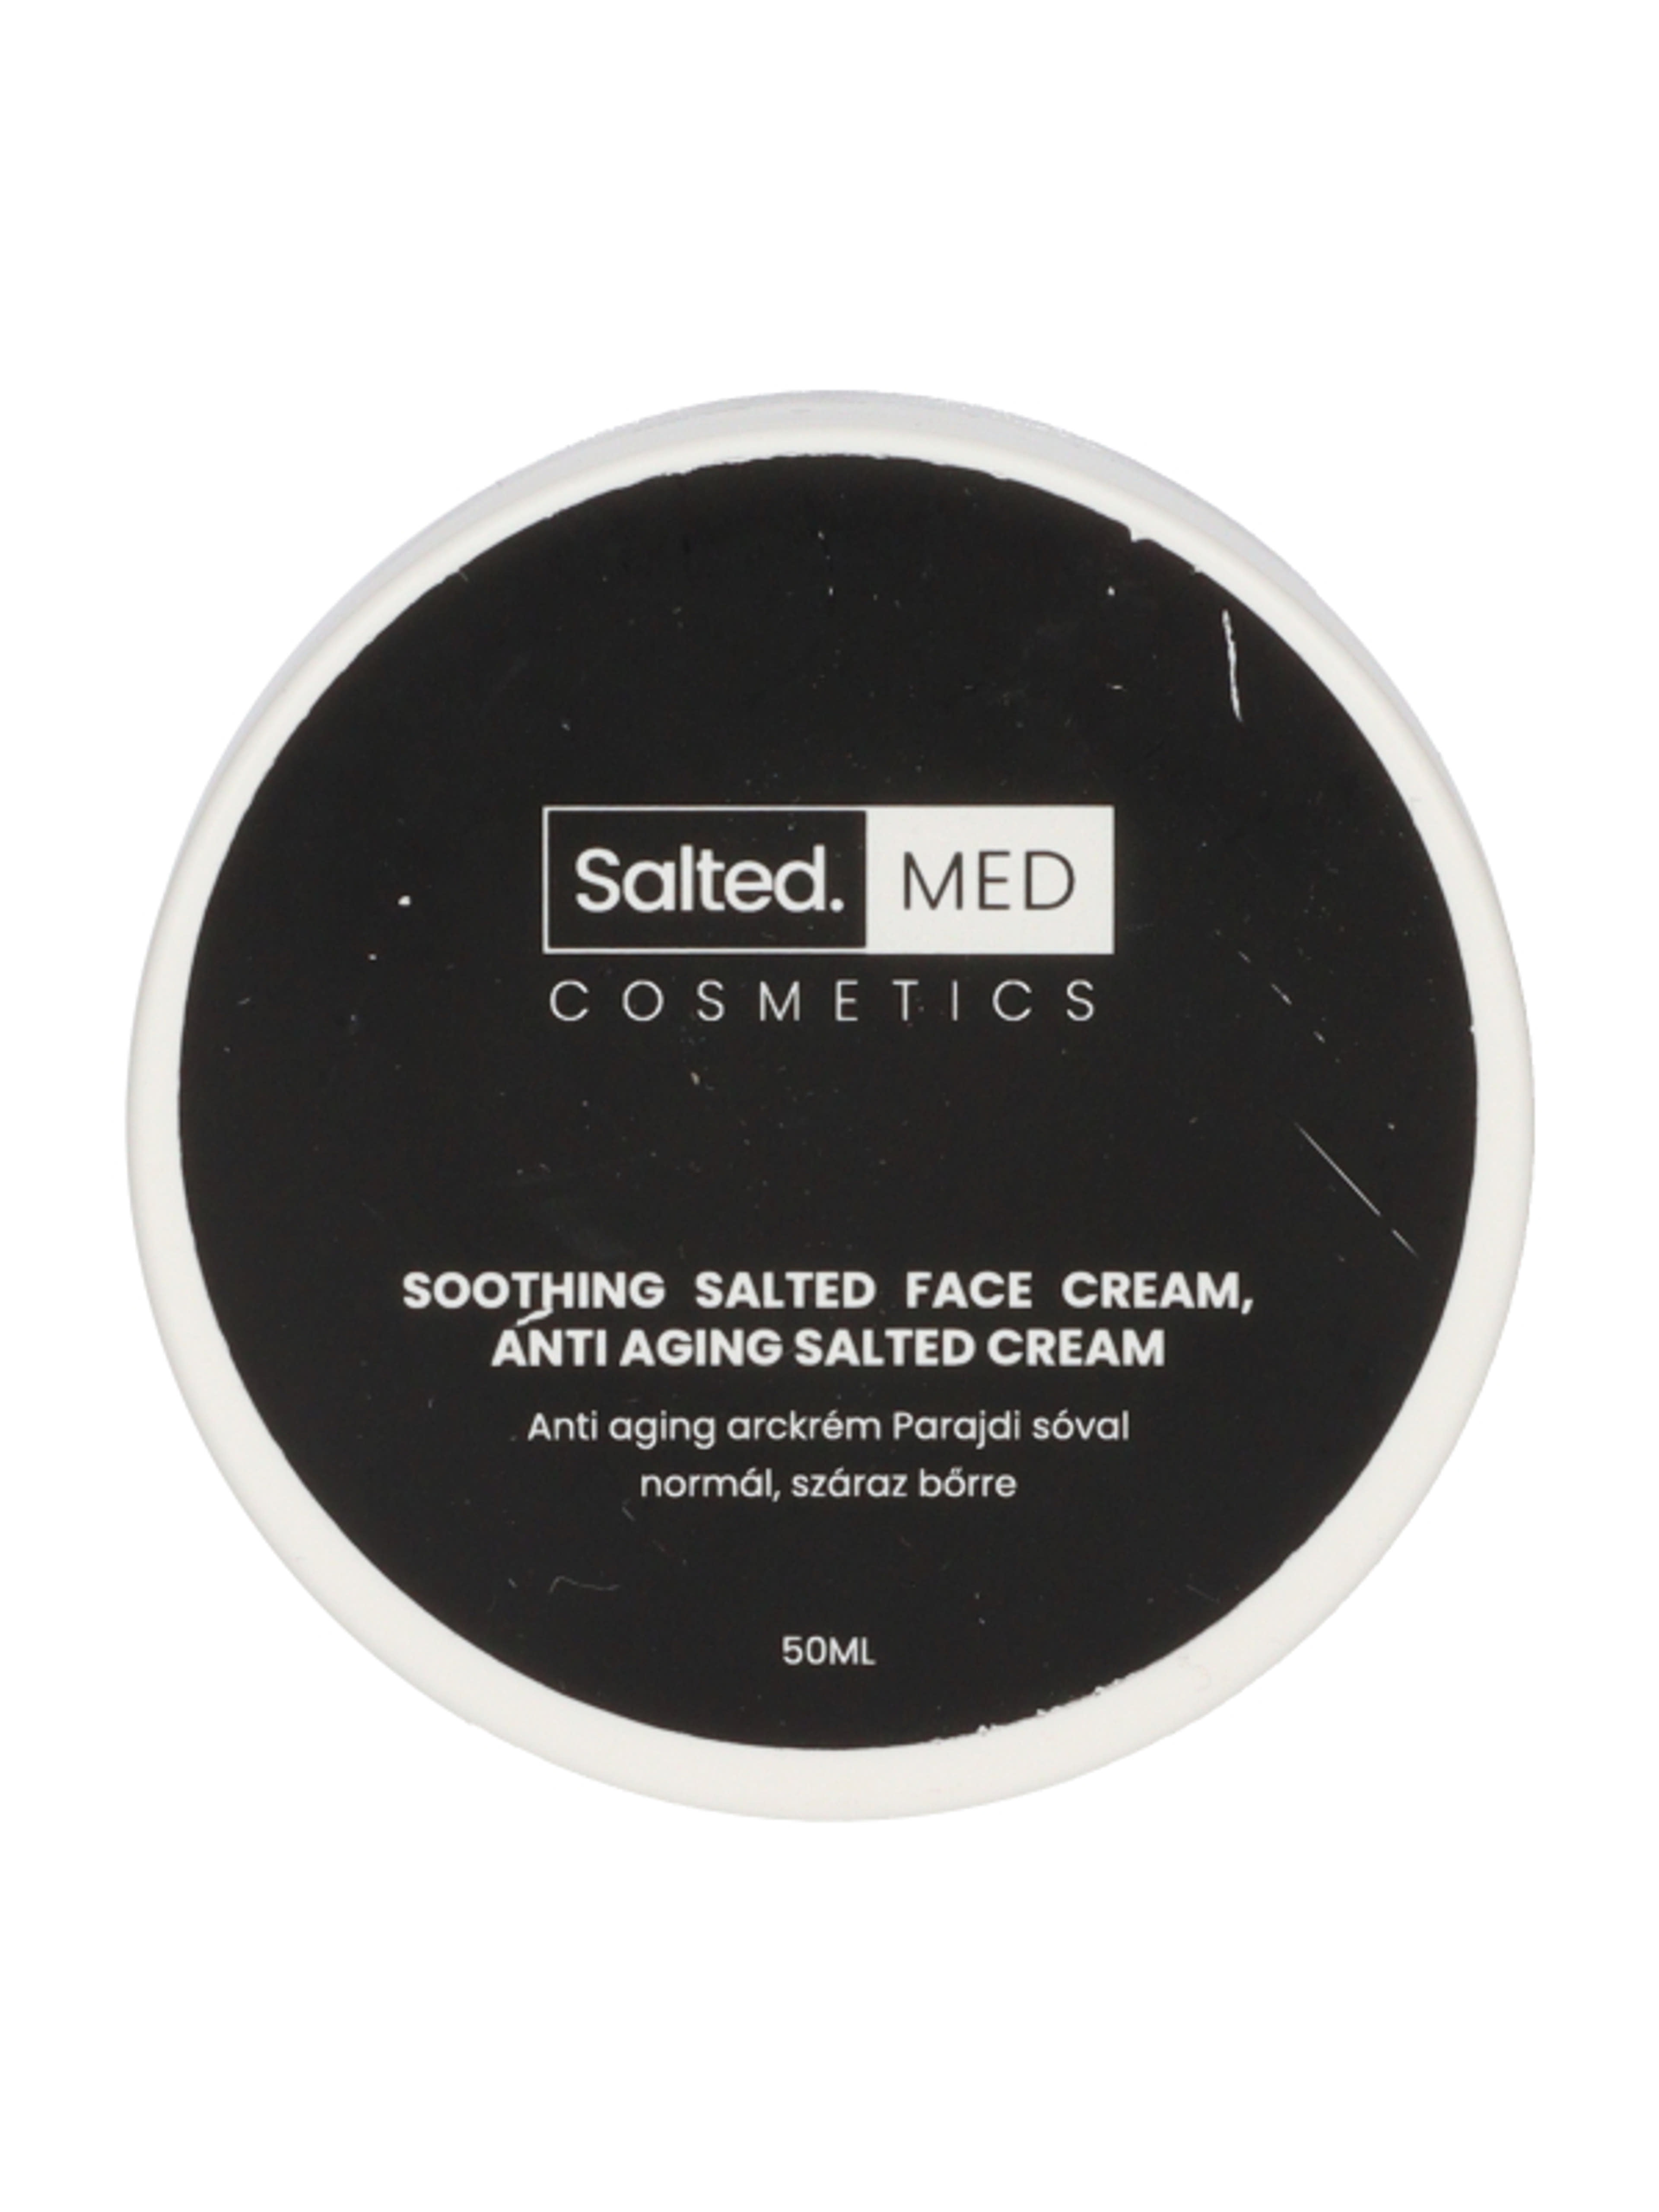 SaltedMED Anti-aging parajdi sós arckrém normál, száraz bőrre - 50 ml